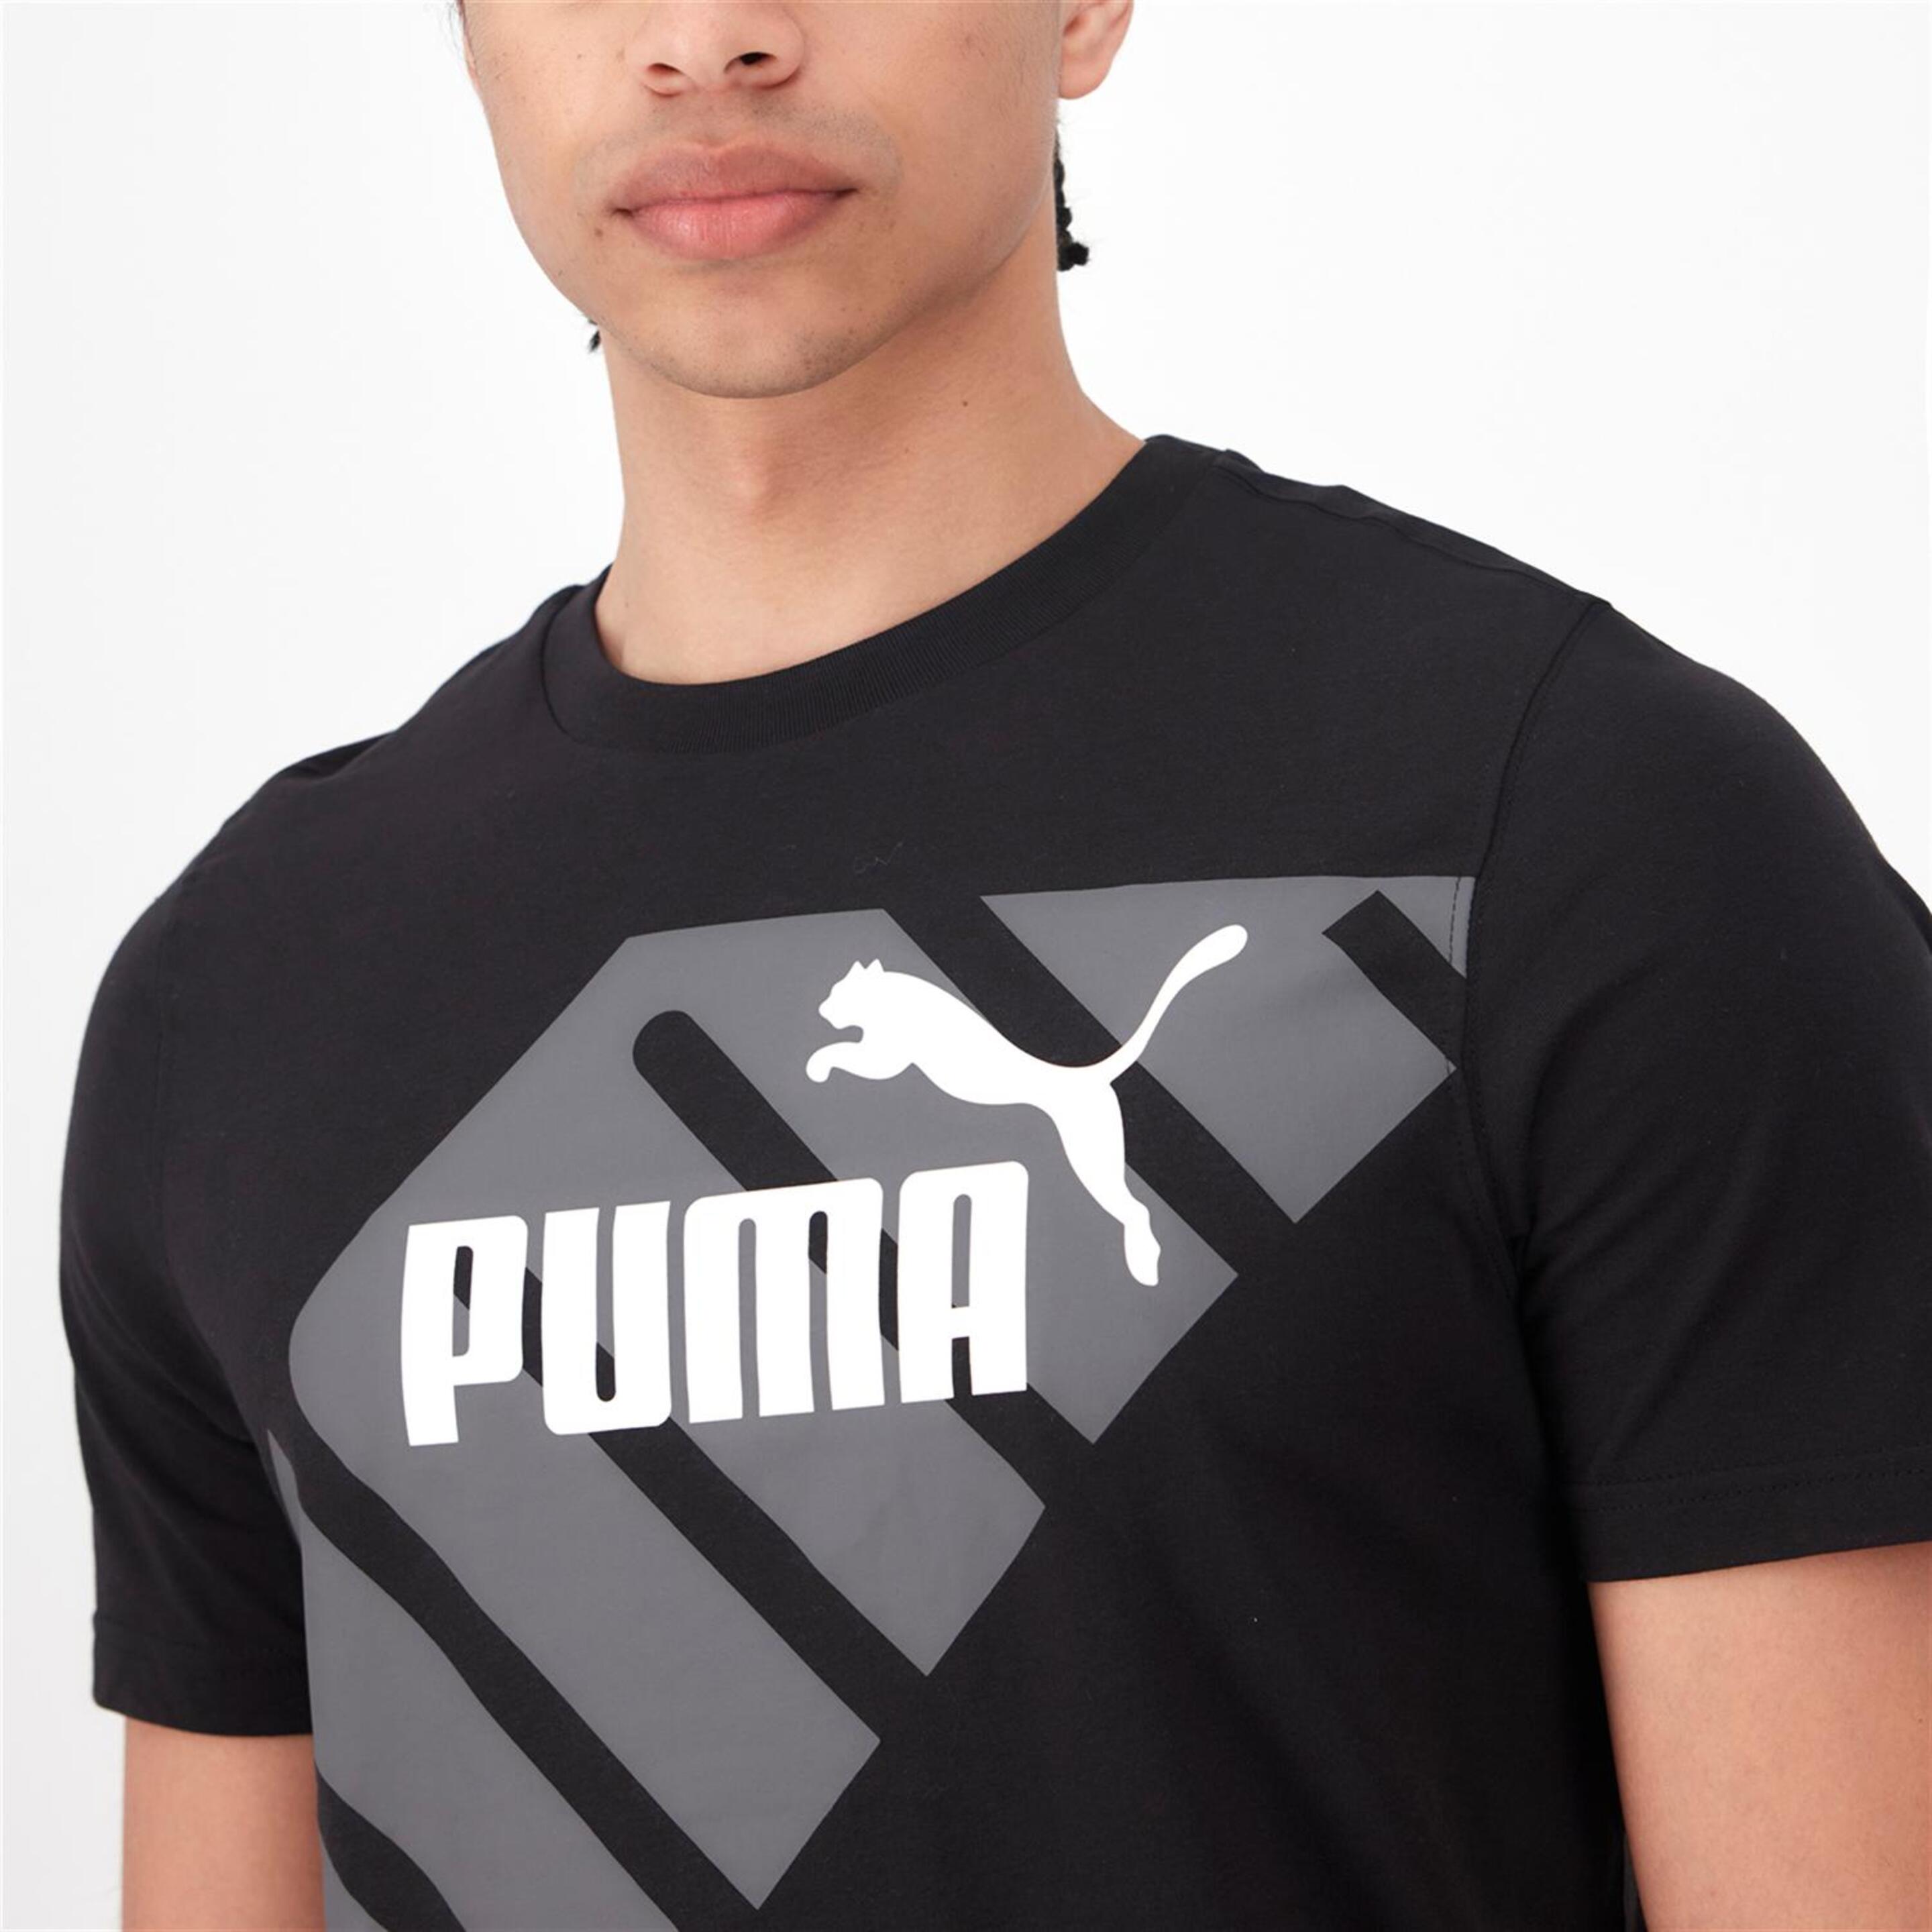 Puma Power